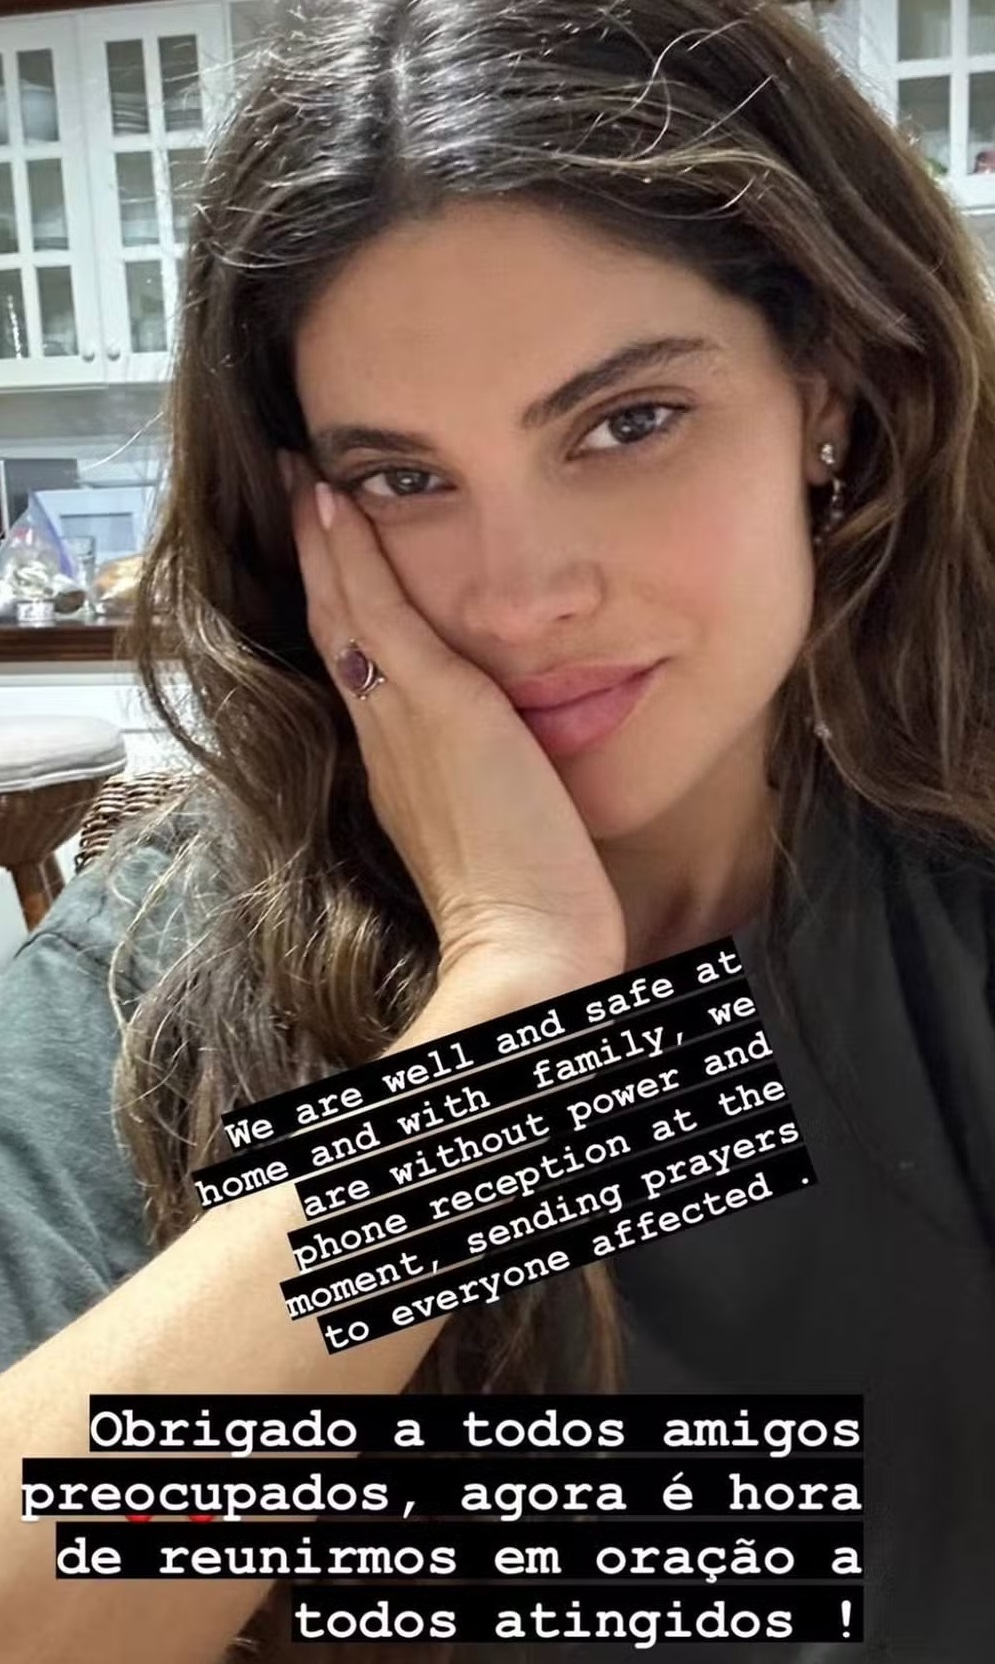 Postagem da Miss Brasil informando que está bem e pedindo orações às pessoas atingidas